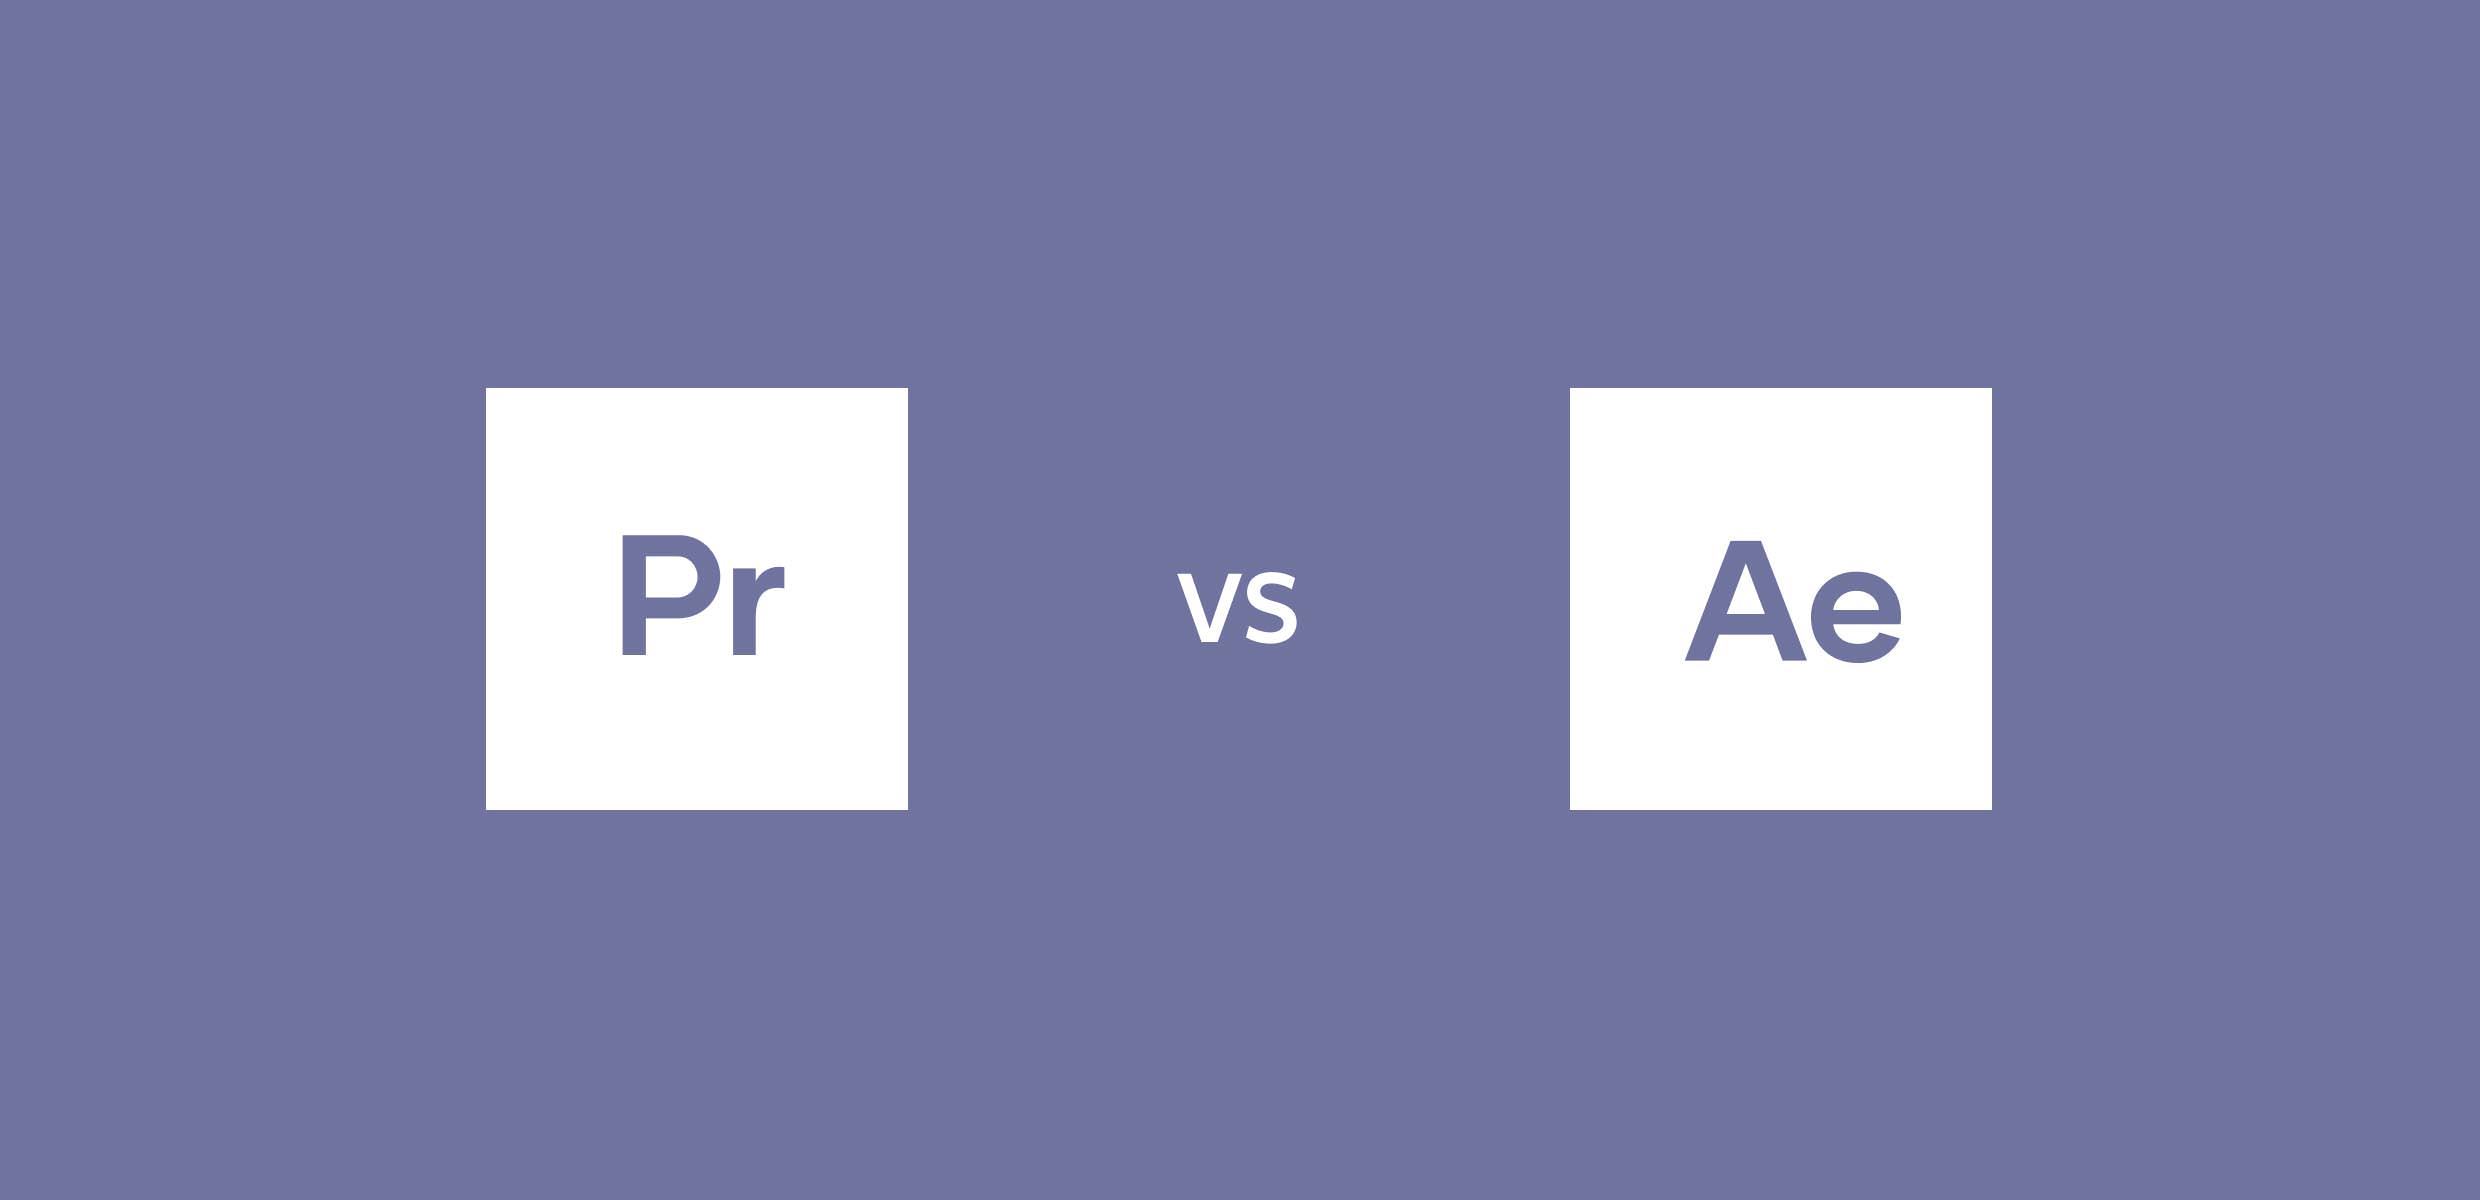 Effect vs. After Effects или Premiere Pro. Premiere Pro vs. Adobe after Effects vs Premiere Pro. Vs эффект.